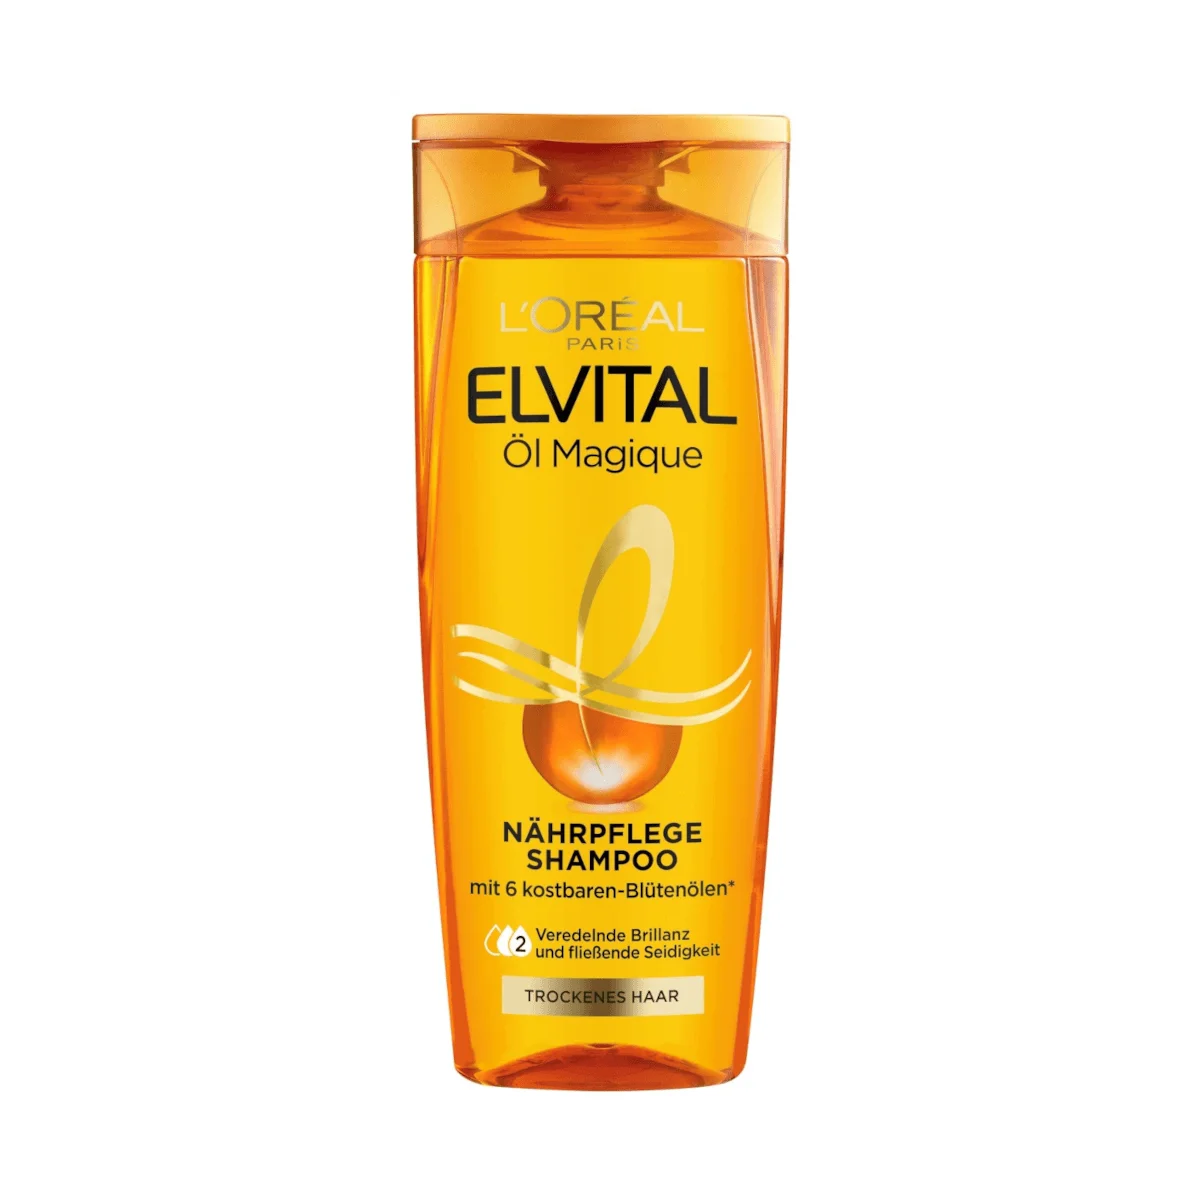 L’Oréal Elvital Öl Magique Nährpflege Shampoo, 300 ml